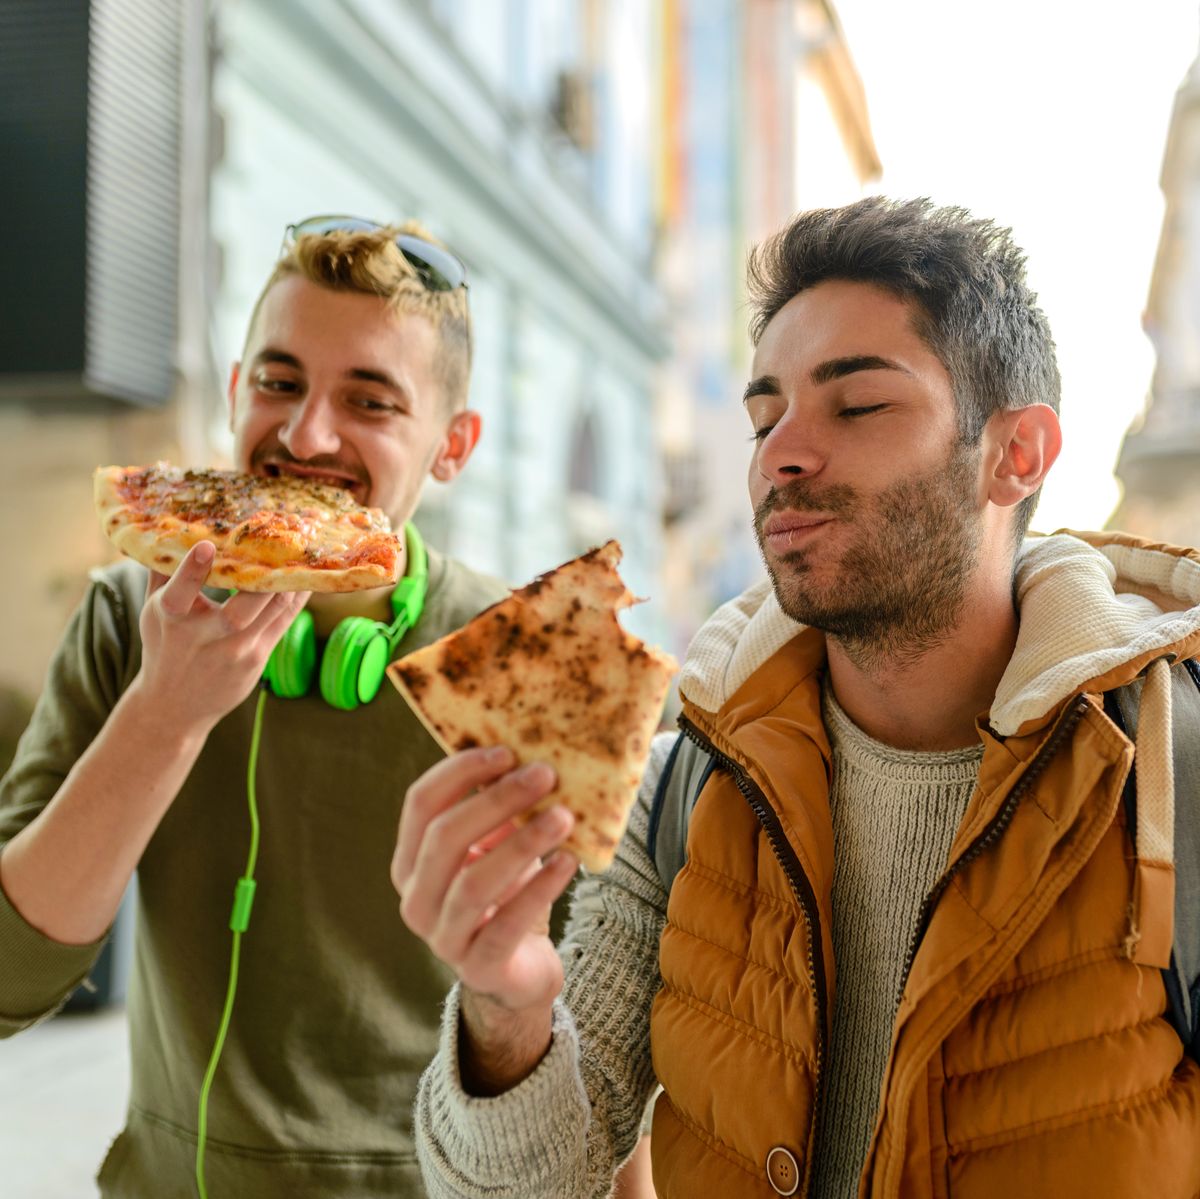 Male Friends Having Pizza